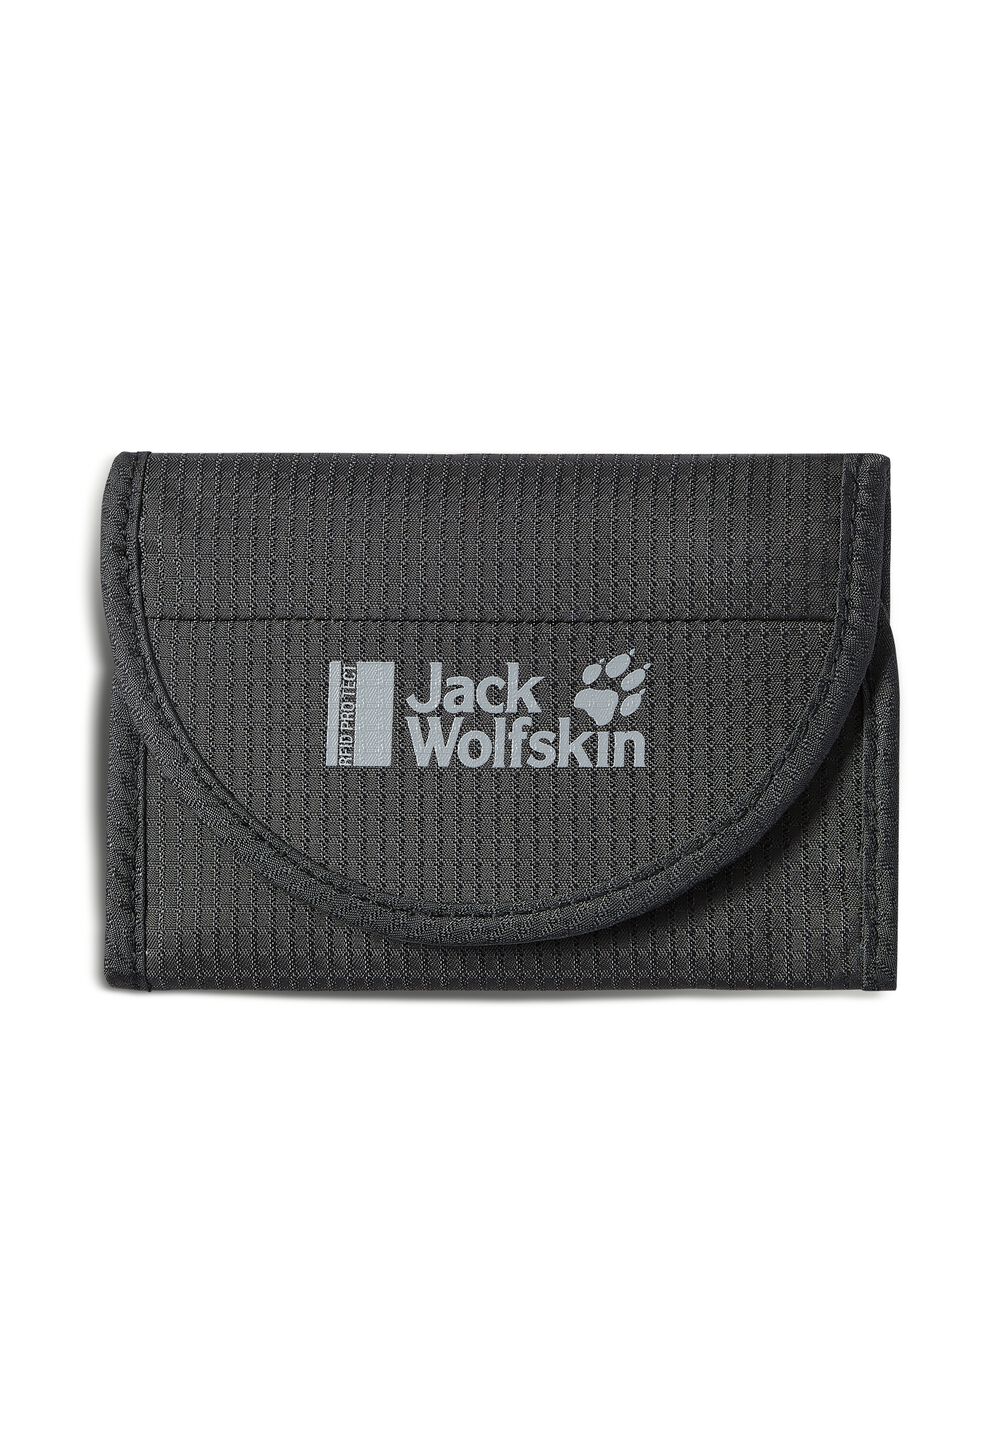 Image of Jack Wolfskin Klett-Portemonnaie mit RFID-Ausspähschutz Cashbag Pouches&Wallets Rfid one size phantom phantom